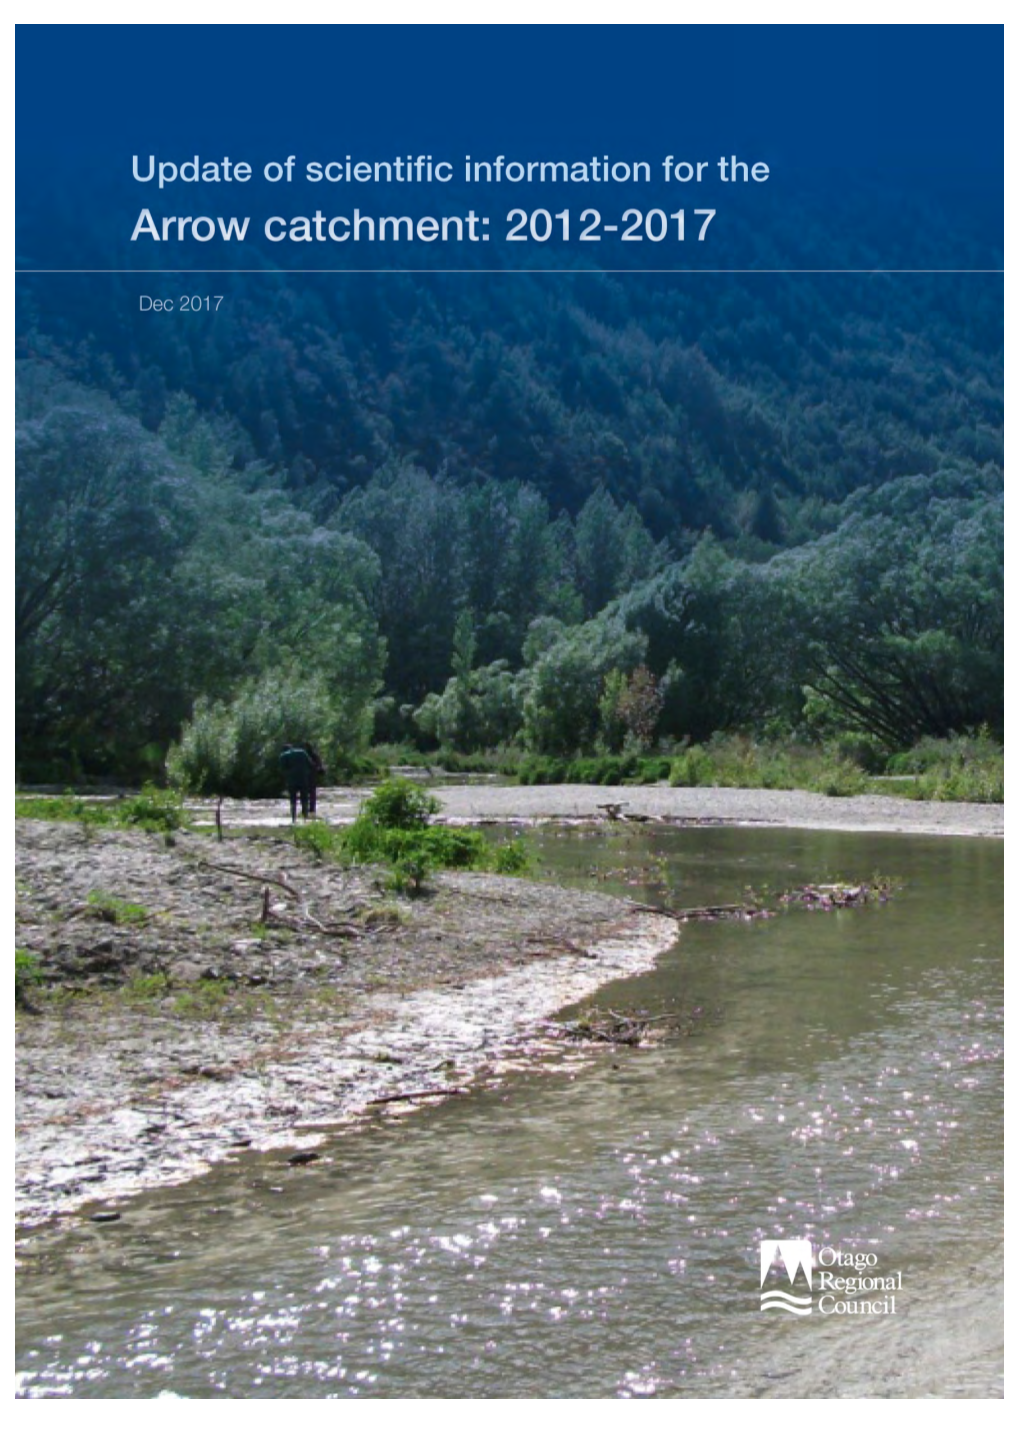 4. Aquatic Ecosystem Values of the Arrow River